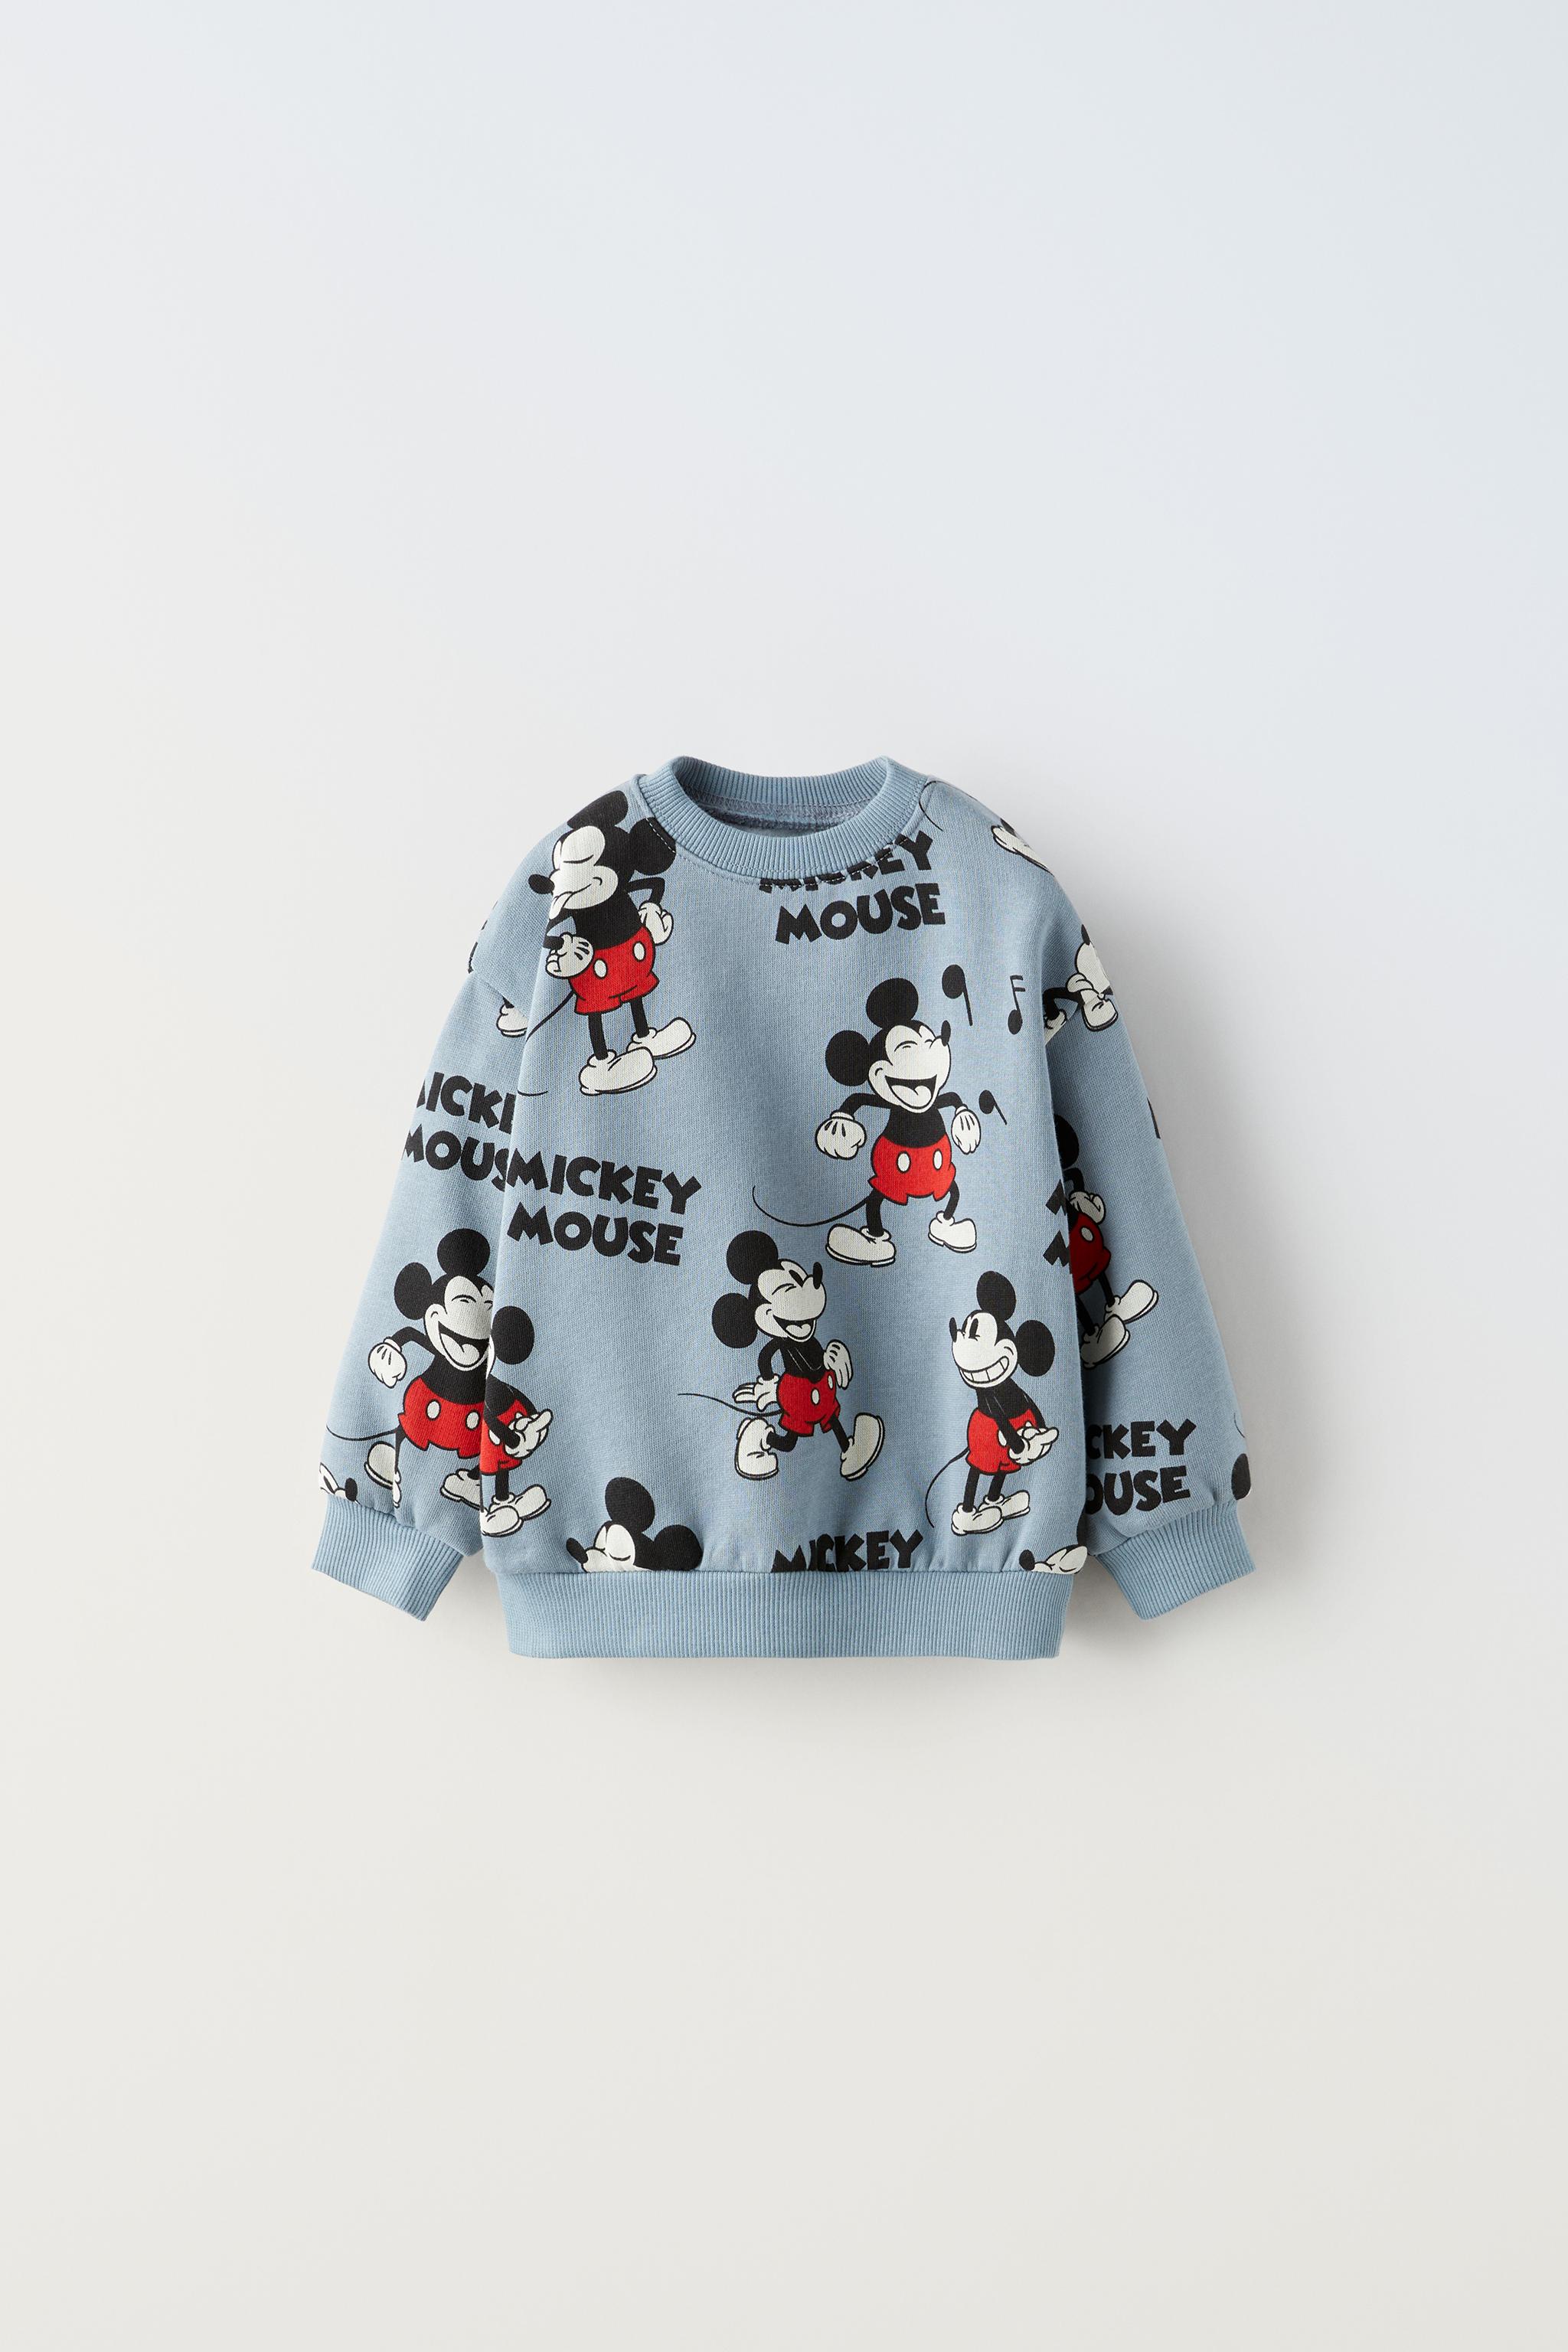 Zara lanza la sudadera de Mickey Mouse que te llevará a la infancia